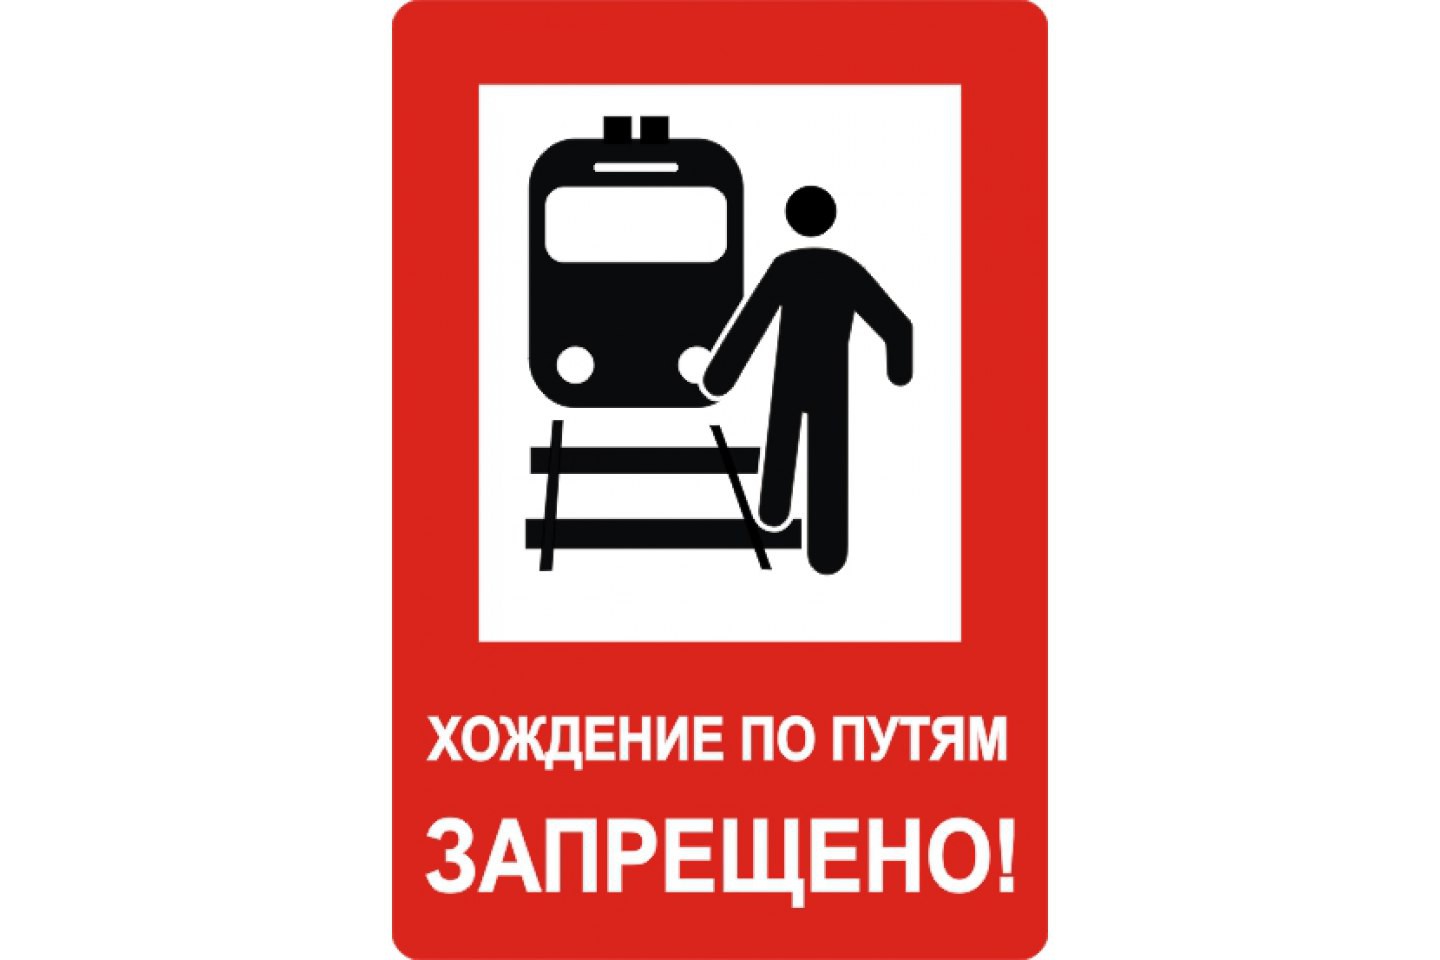 На железной дороге запрещено. Хождение по путям запрещено. Железнодорожные знаки безопасности. Таблички на железной дороге. Таблички безопасности на транспорте.